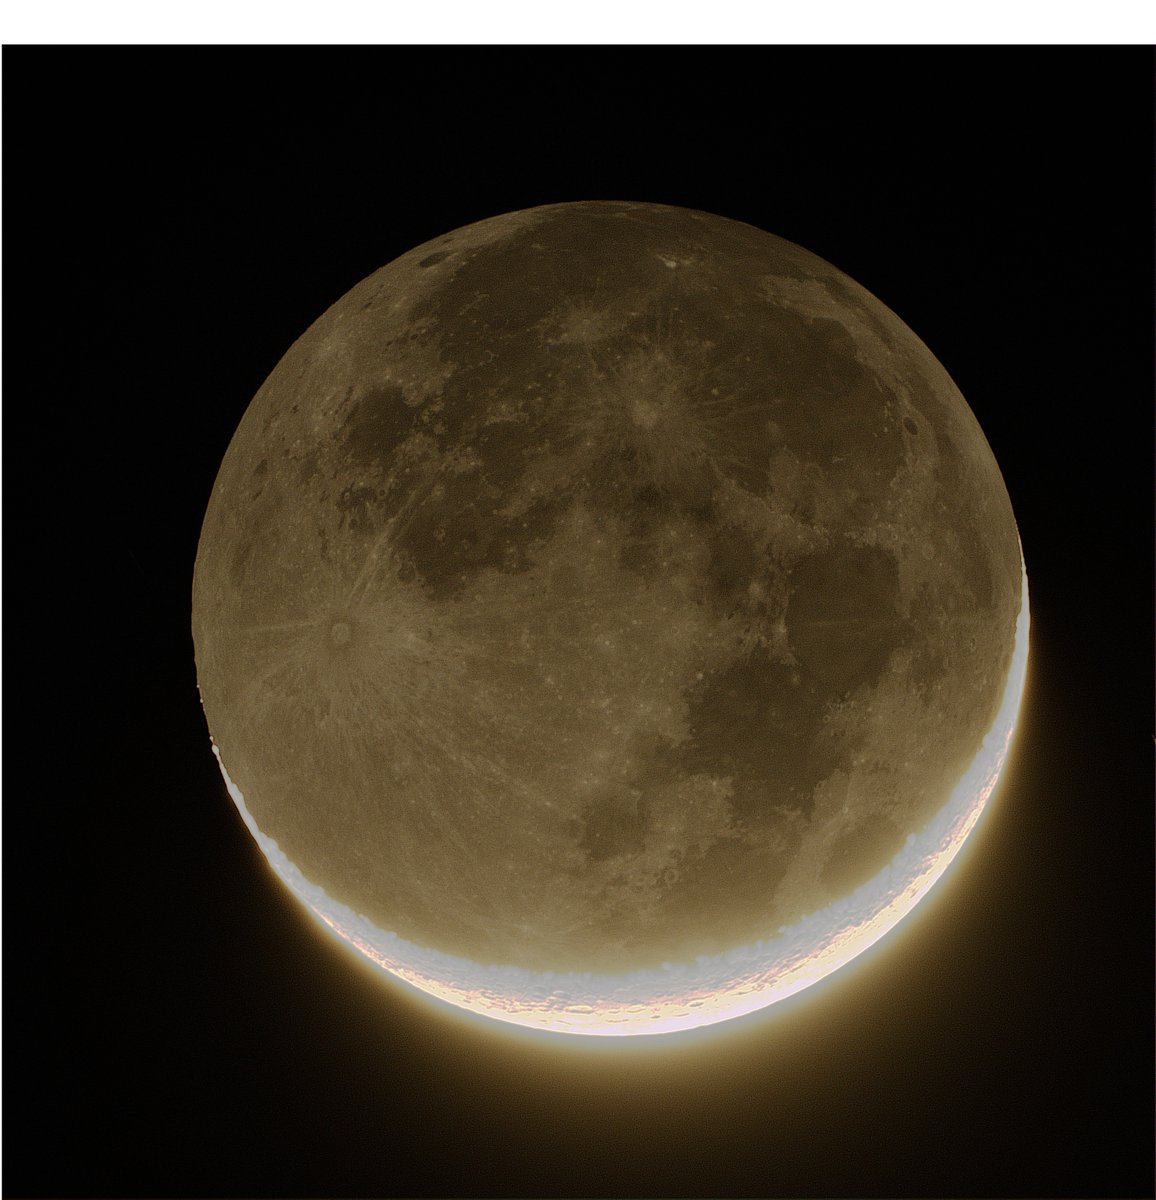 ふぅ…中々難儀したぜ(達成感)

昨日の月(月齢2.3)🌒
@ Celestron 4SE,Vixen ED80S(地球照)🔭
#月 #地球照

ED80Sにクローズアップレンズのレデューサーは
相性めちゃくちゃ(・∀・)ｲｲ!!
青空の中撮ったやつはコントラストがダメでボツ。
暗くなってから撮ったけどシーイングがイマイチ。